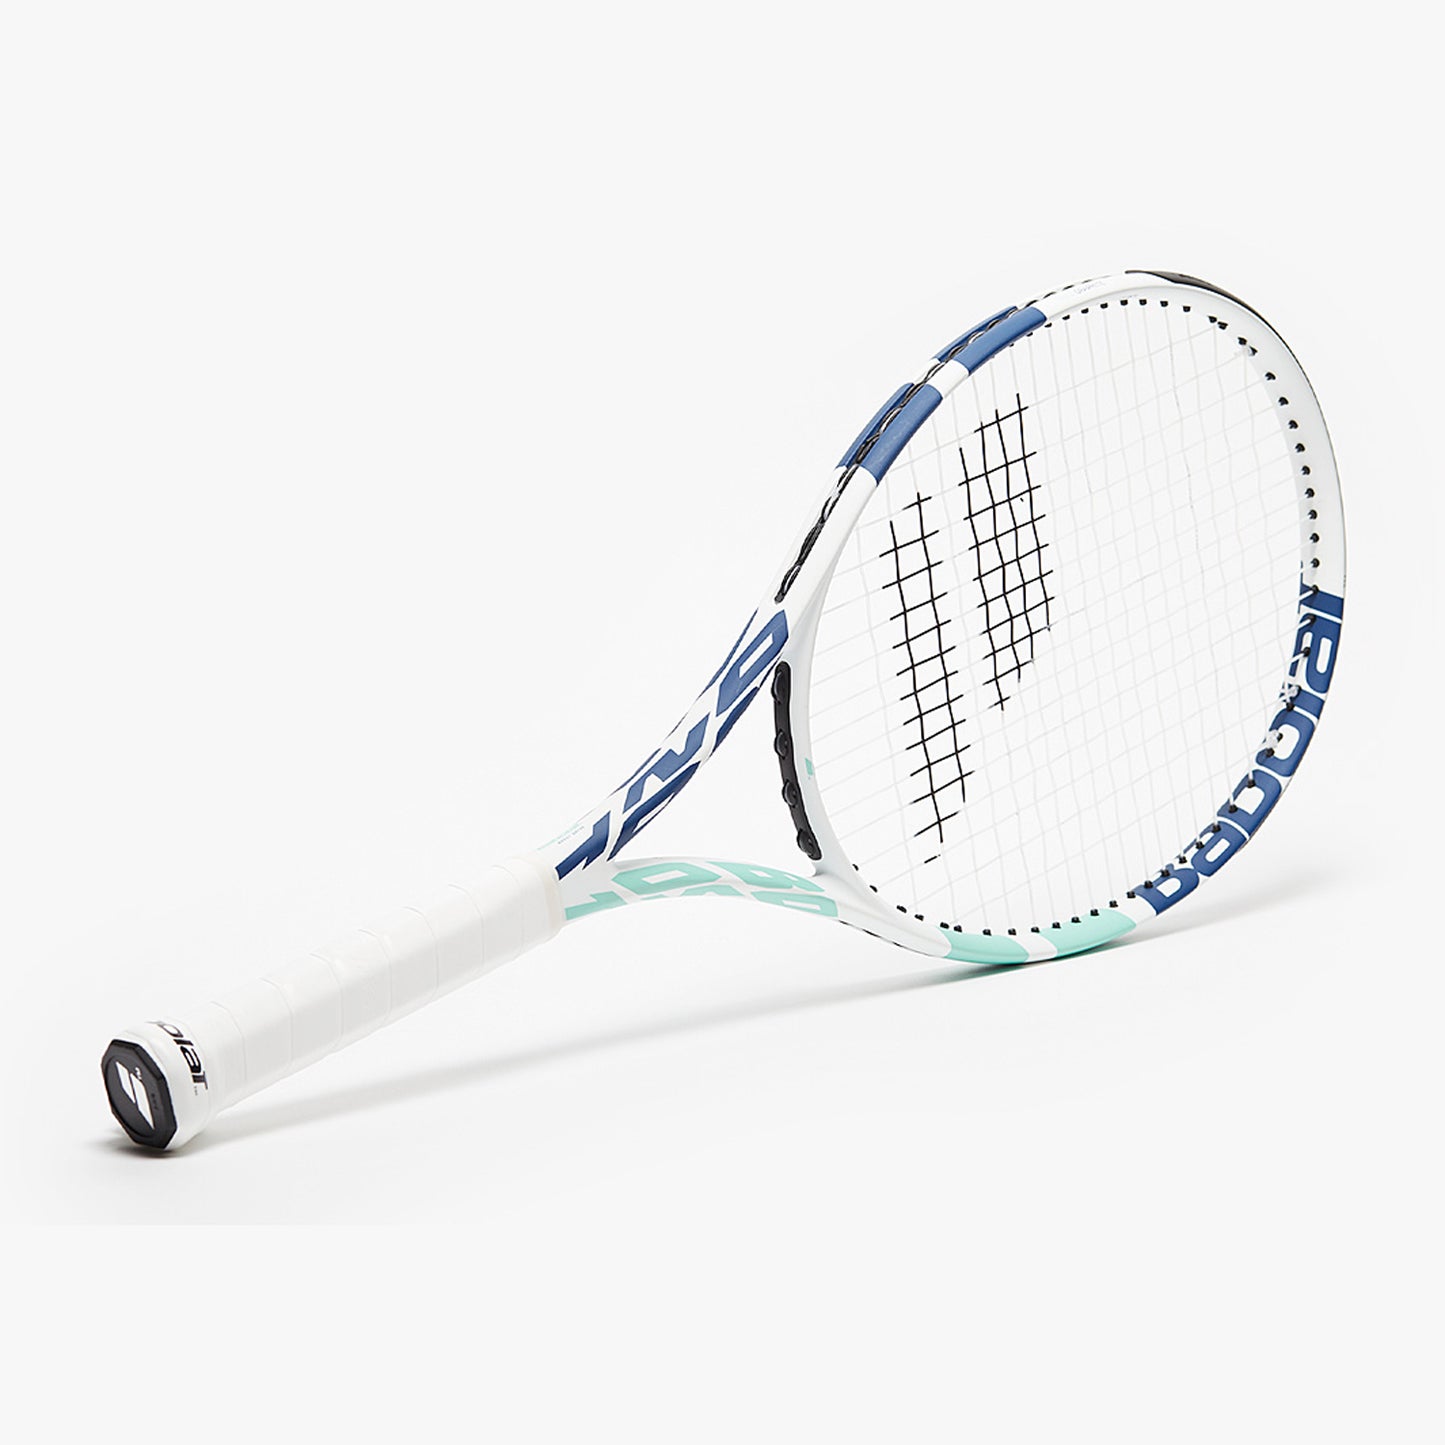 Babolat 121224 BOOST DRIVE STRUNG Tennis Racquet 4 3/8, White/Blue/Green - Best Price online Prokicksports.com